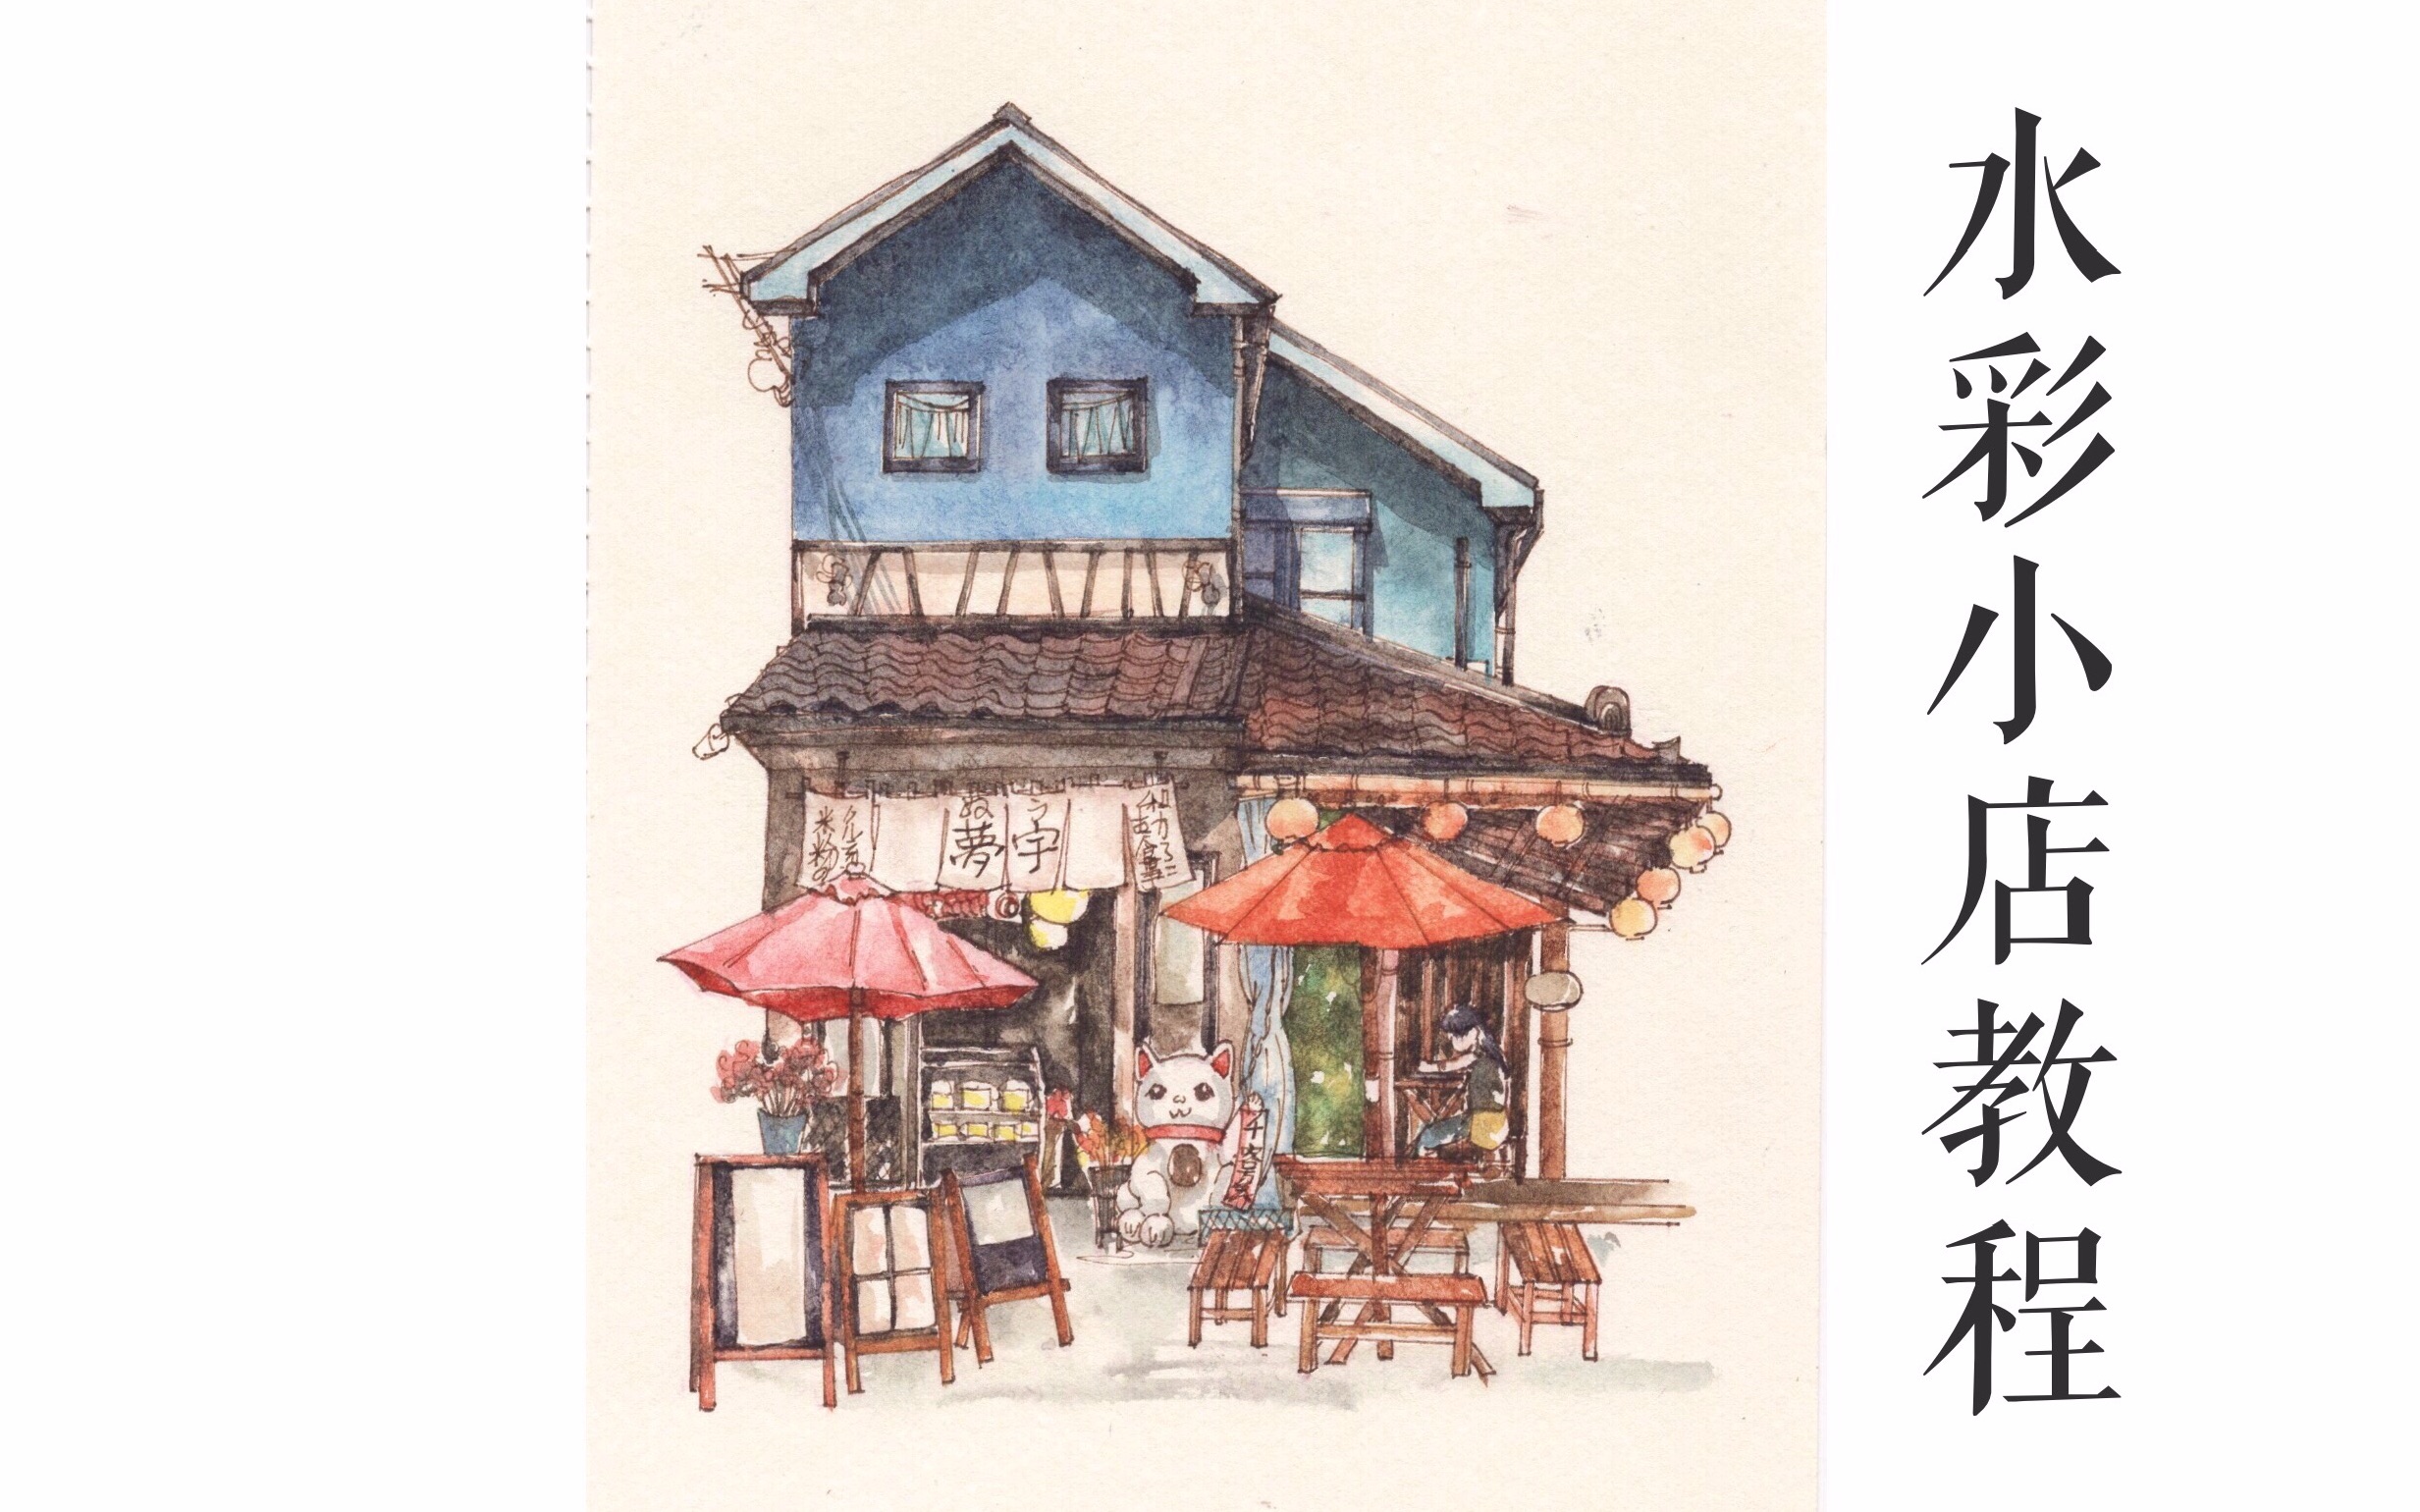 日式小店水彩画教程图片